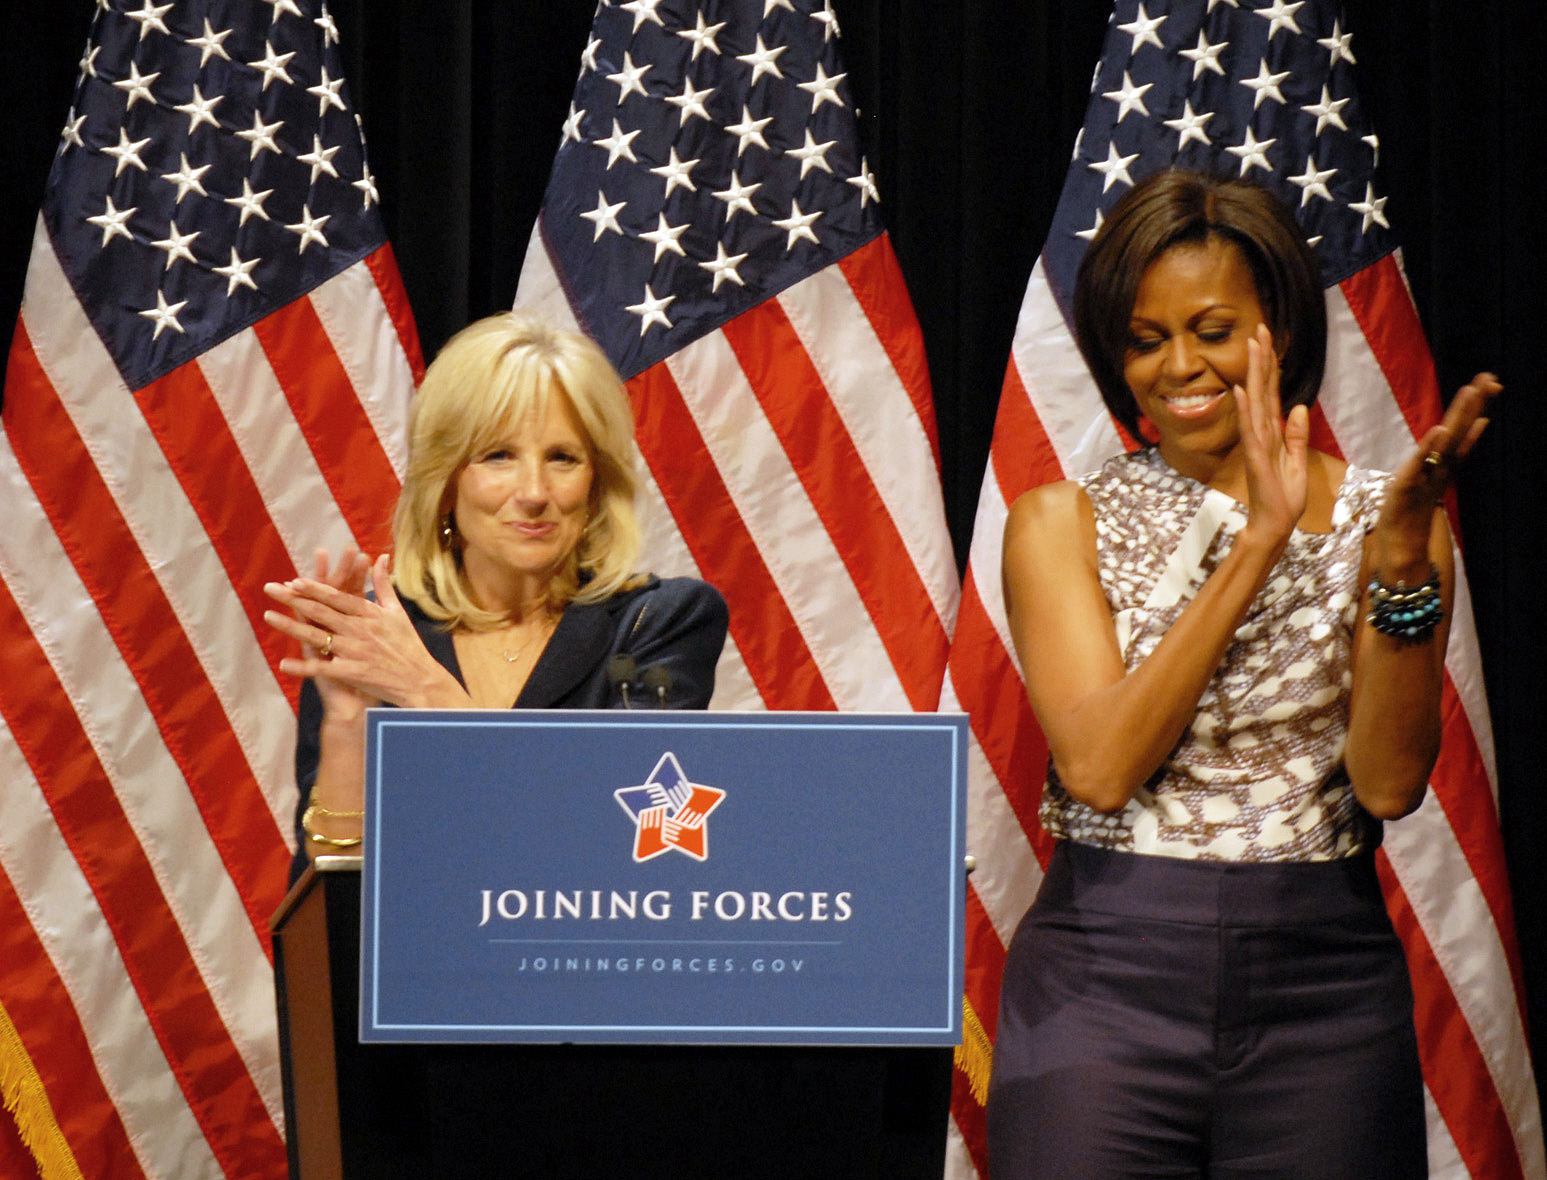 Dr. Jill Biden, First Lady Michelle Obama photo:achieve.defense.gov